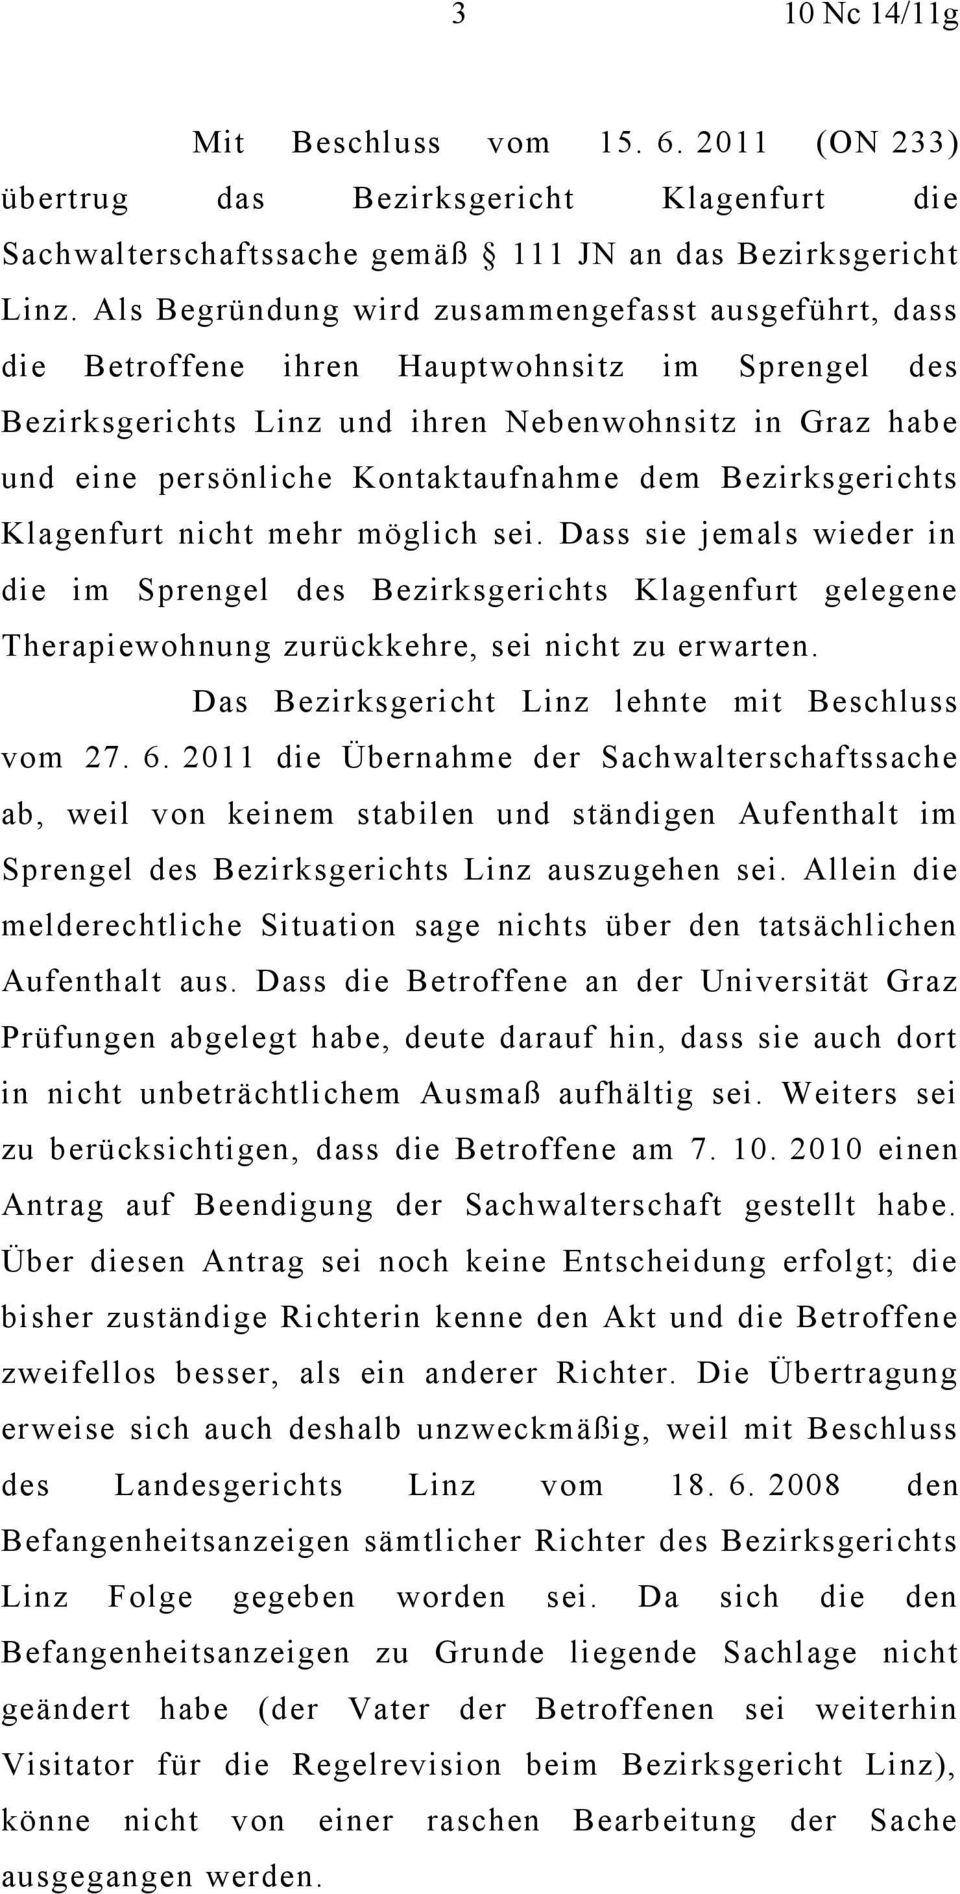 dem Bezirksgerichts Klagenfurt nicht mehr möglich sei. Dass sie jemals wieder in die im Sprengel des Bezirksgerichts Klagenfurt gelegene Therapiewohnung zurückkehre, sei nicht zu erwarten.